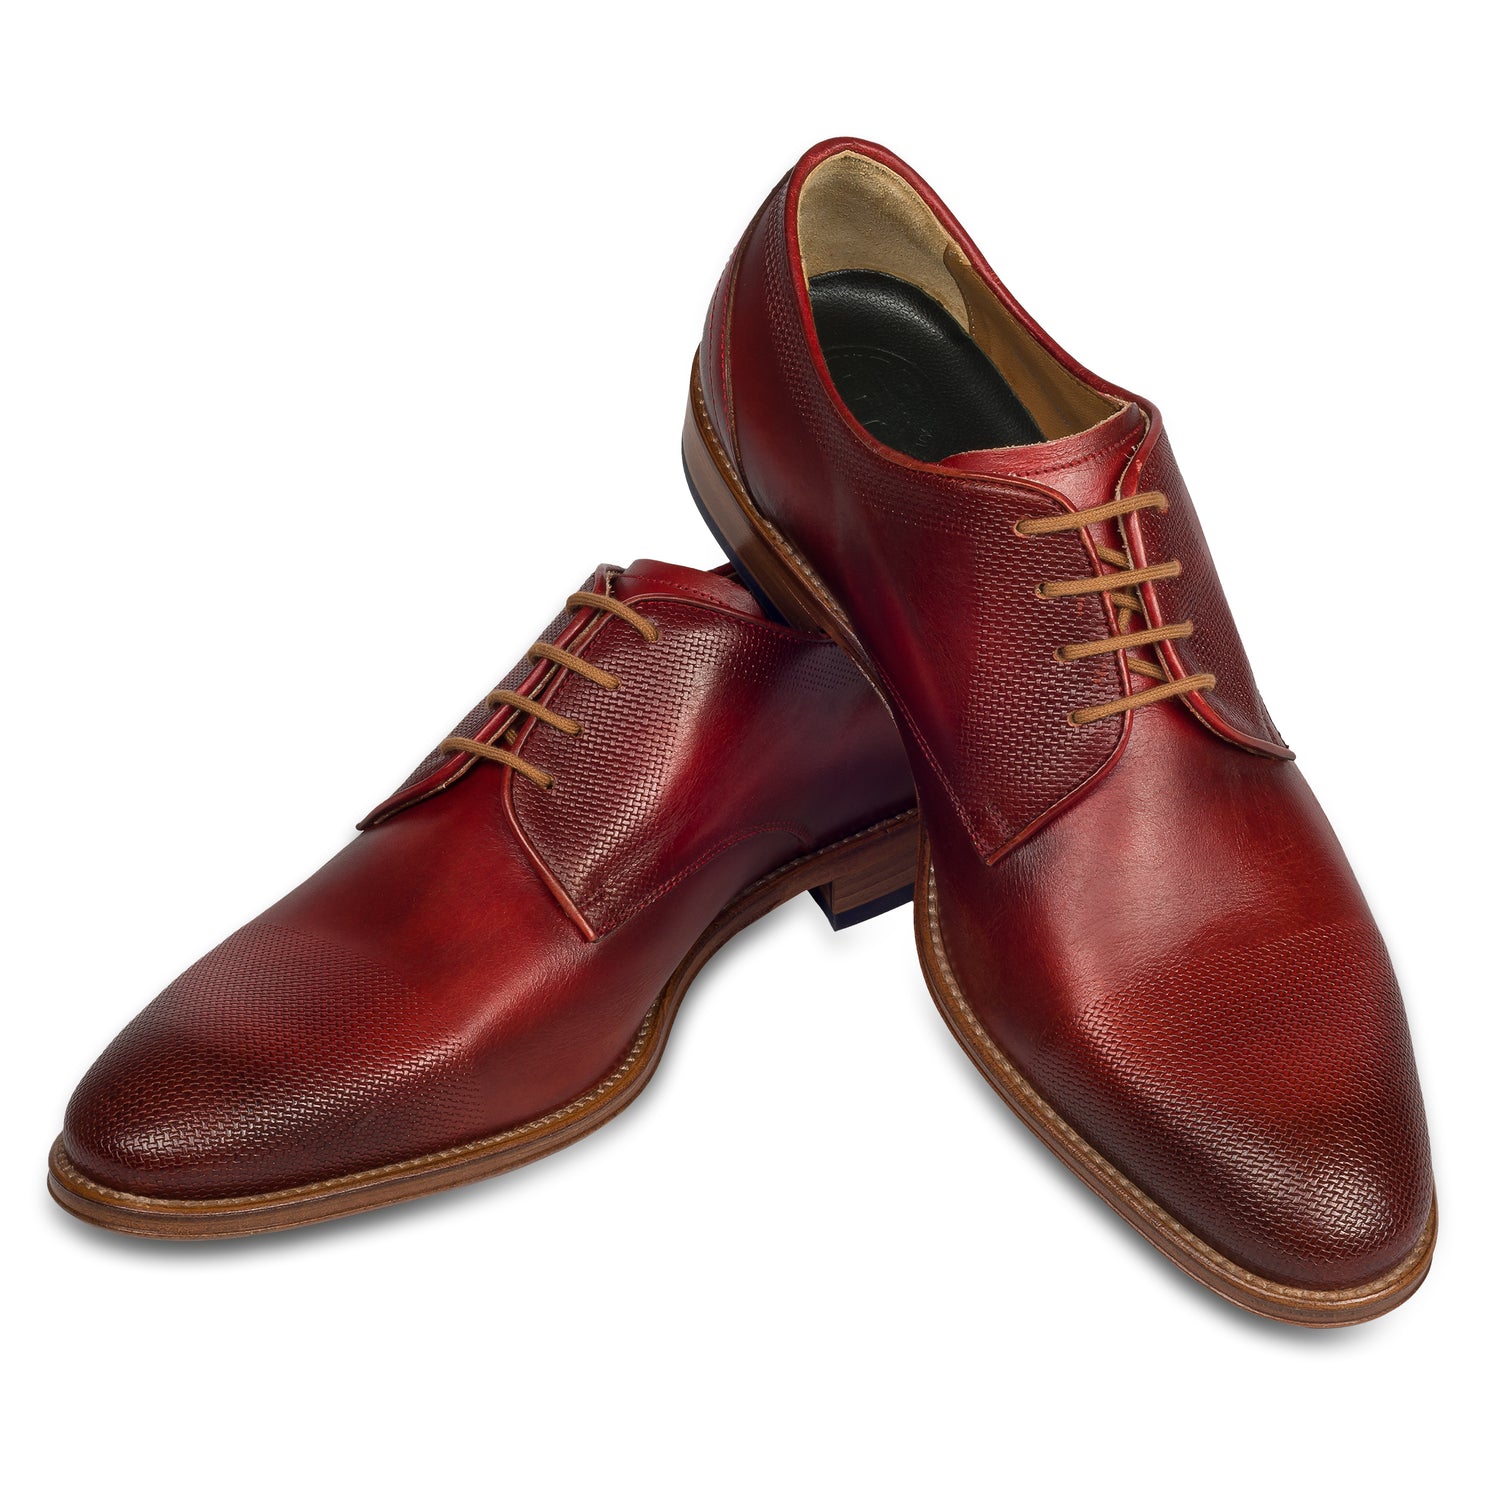 Lorenzi - Italienische Herren Anzugschuhe Derby in rot. Aus Kalbsleder handgefertigt und durchgenäht. Paarweise Ansicht Schuhe überkreuzt aufgestellt.